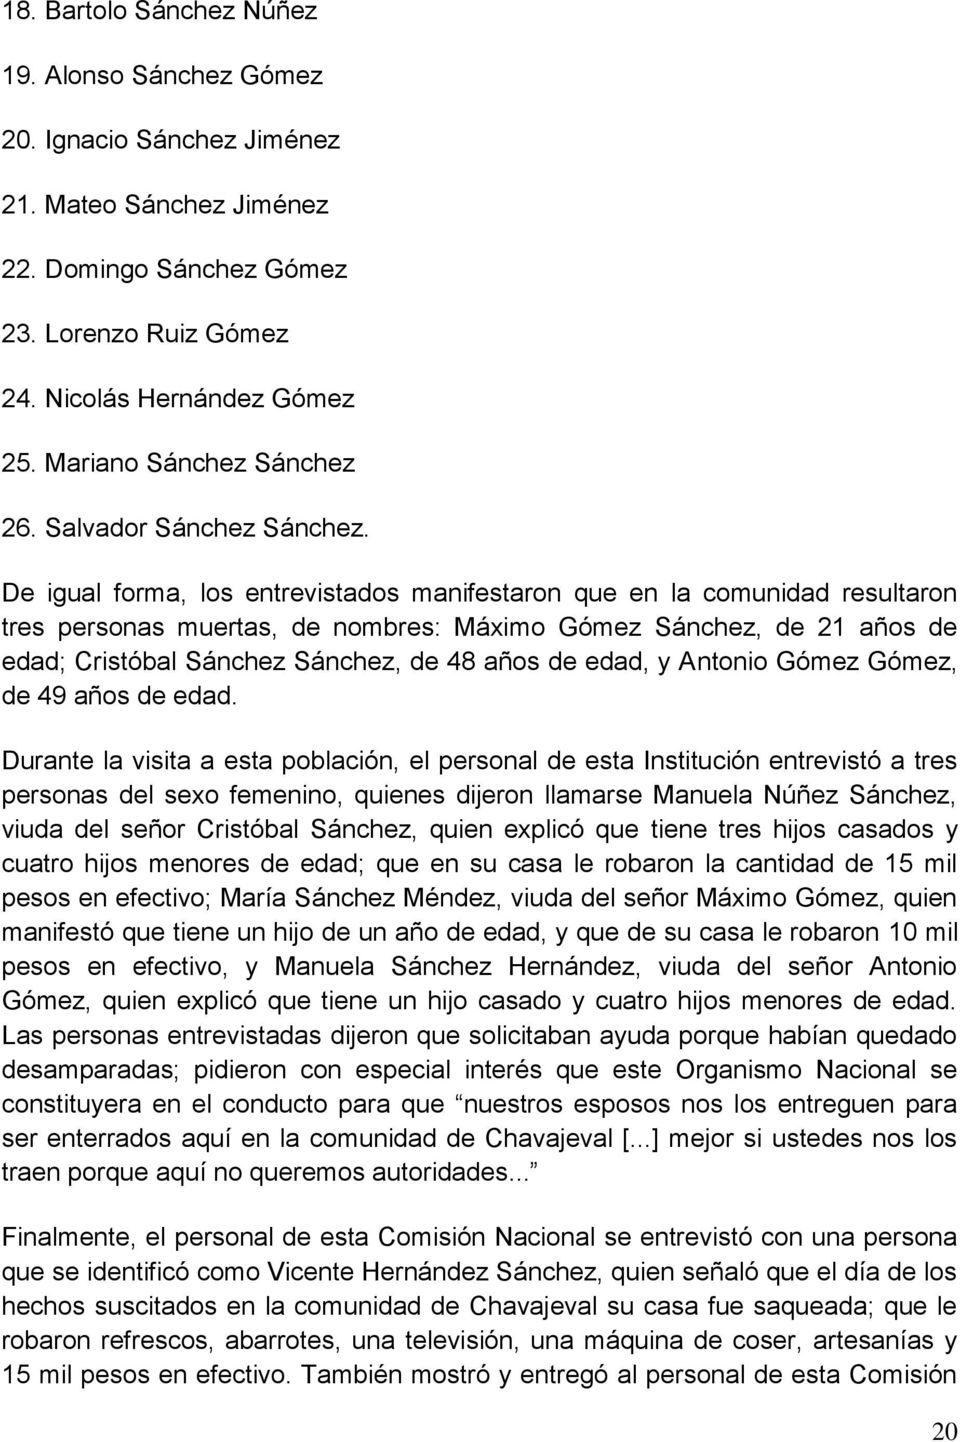 De igual forma, los entrevistados manifestaron que en la comunidad resultaron tres personas muertas, de nombres: Máximo Gómez Sánchez, de 21 años de edad; Cristóbal Sánchez Sánchez, de 48 años de